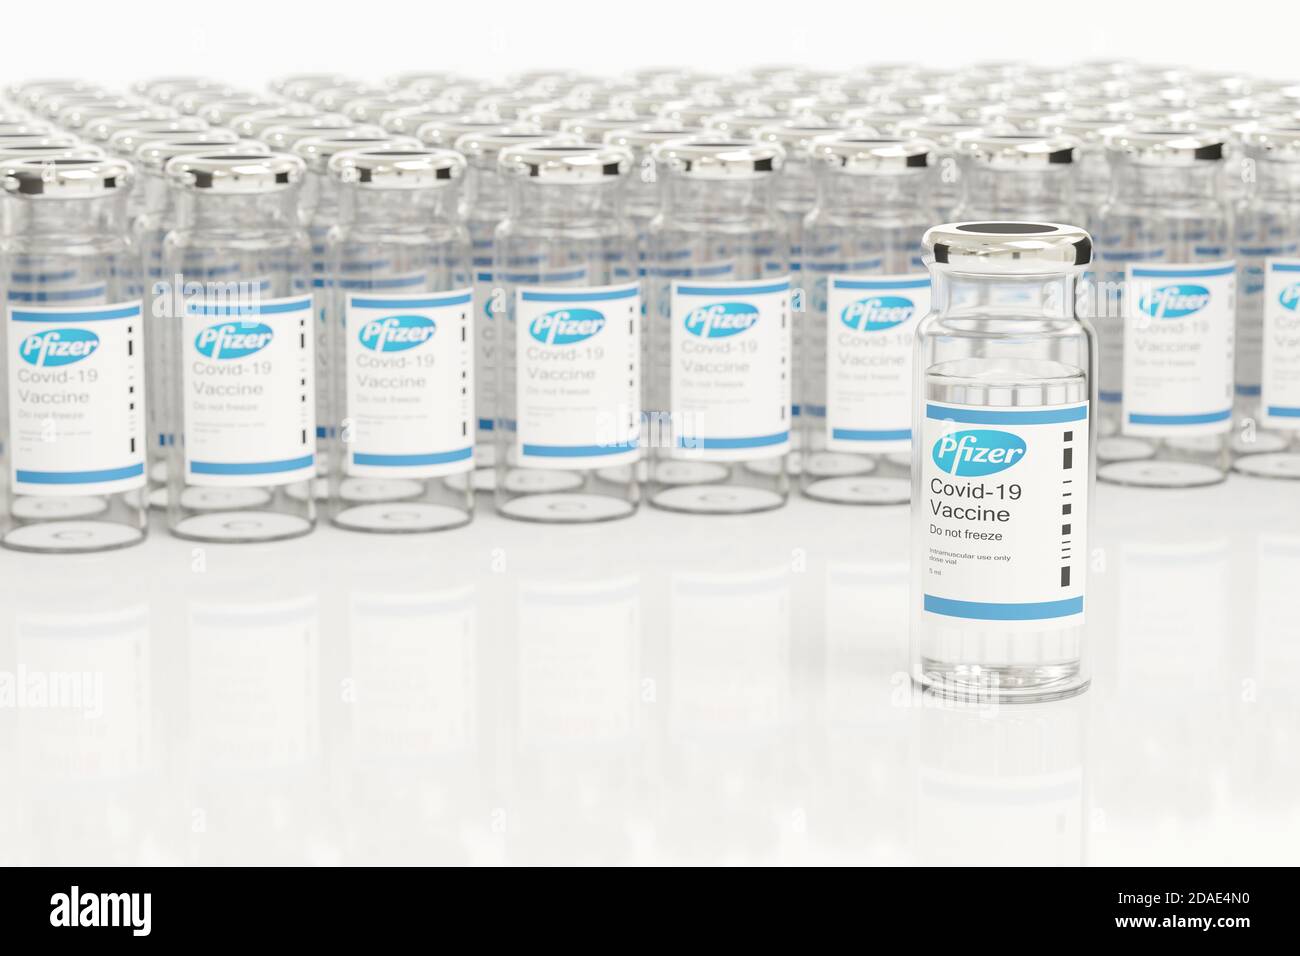 Buenos Aires, Argentina - Noviembre 12: Conjunto de viales de la vacuna Pfizer Covid -19 aislados sobre fondo blanco. Enfoque selectivo. ilustración 3d. Foto de stock